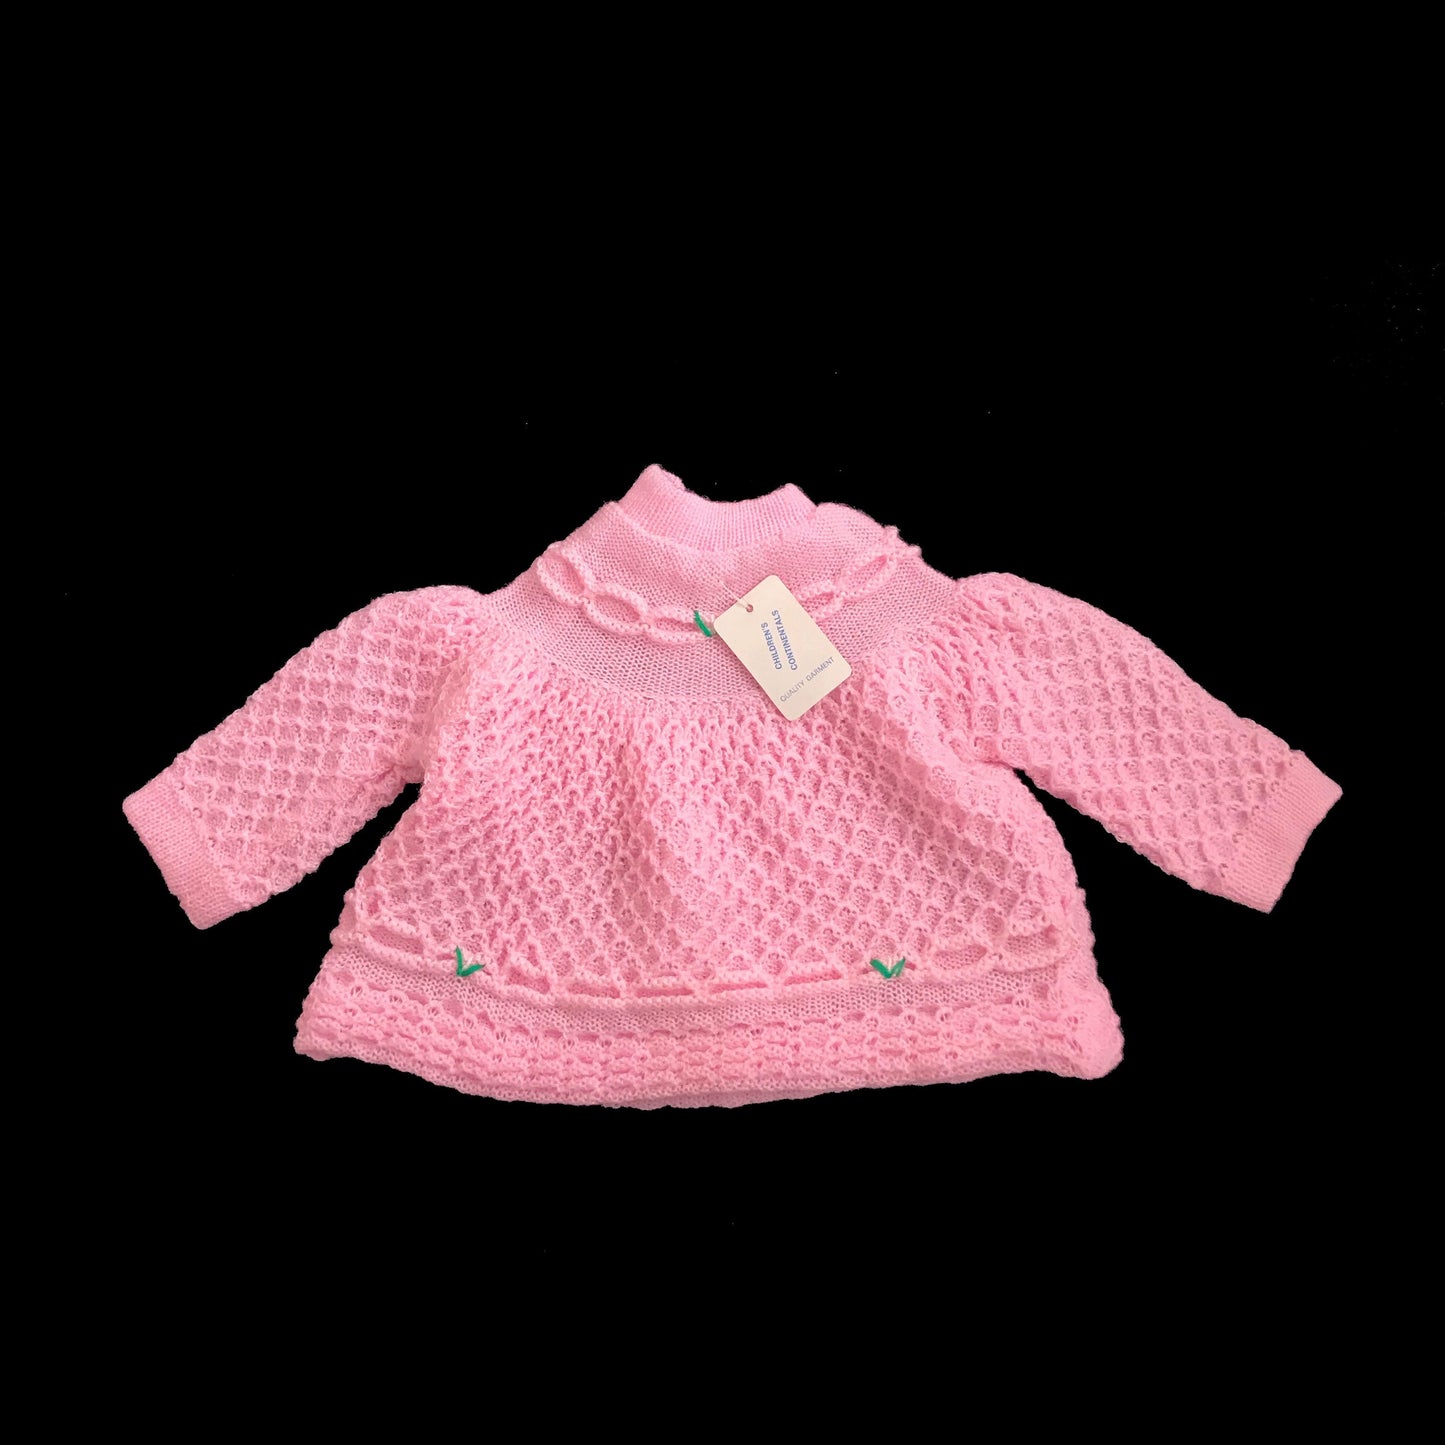 Vintage 70's Pink Knitted Textured Jumper NOS Newborn/ 0-3 Months